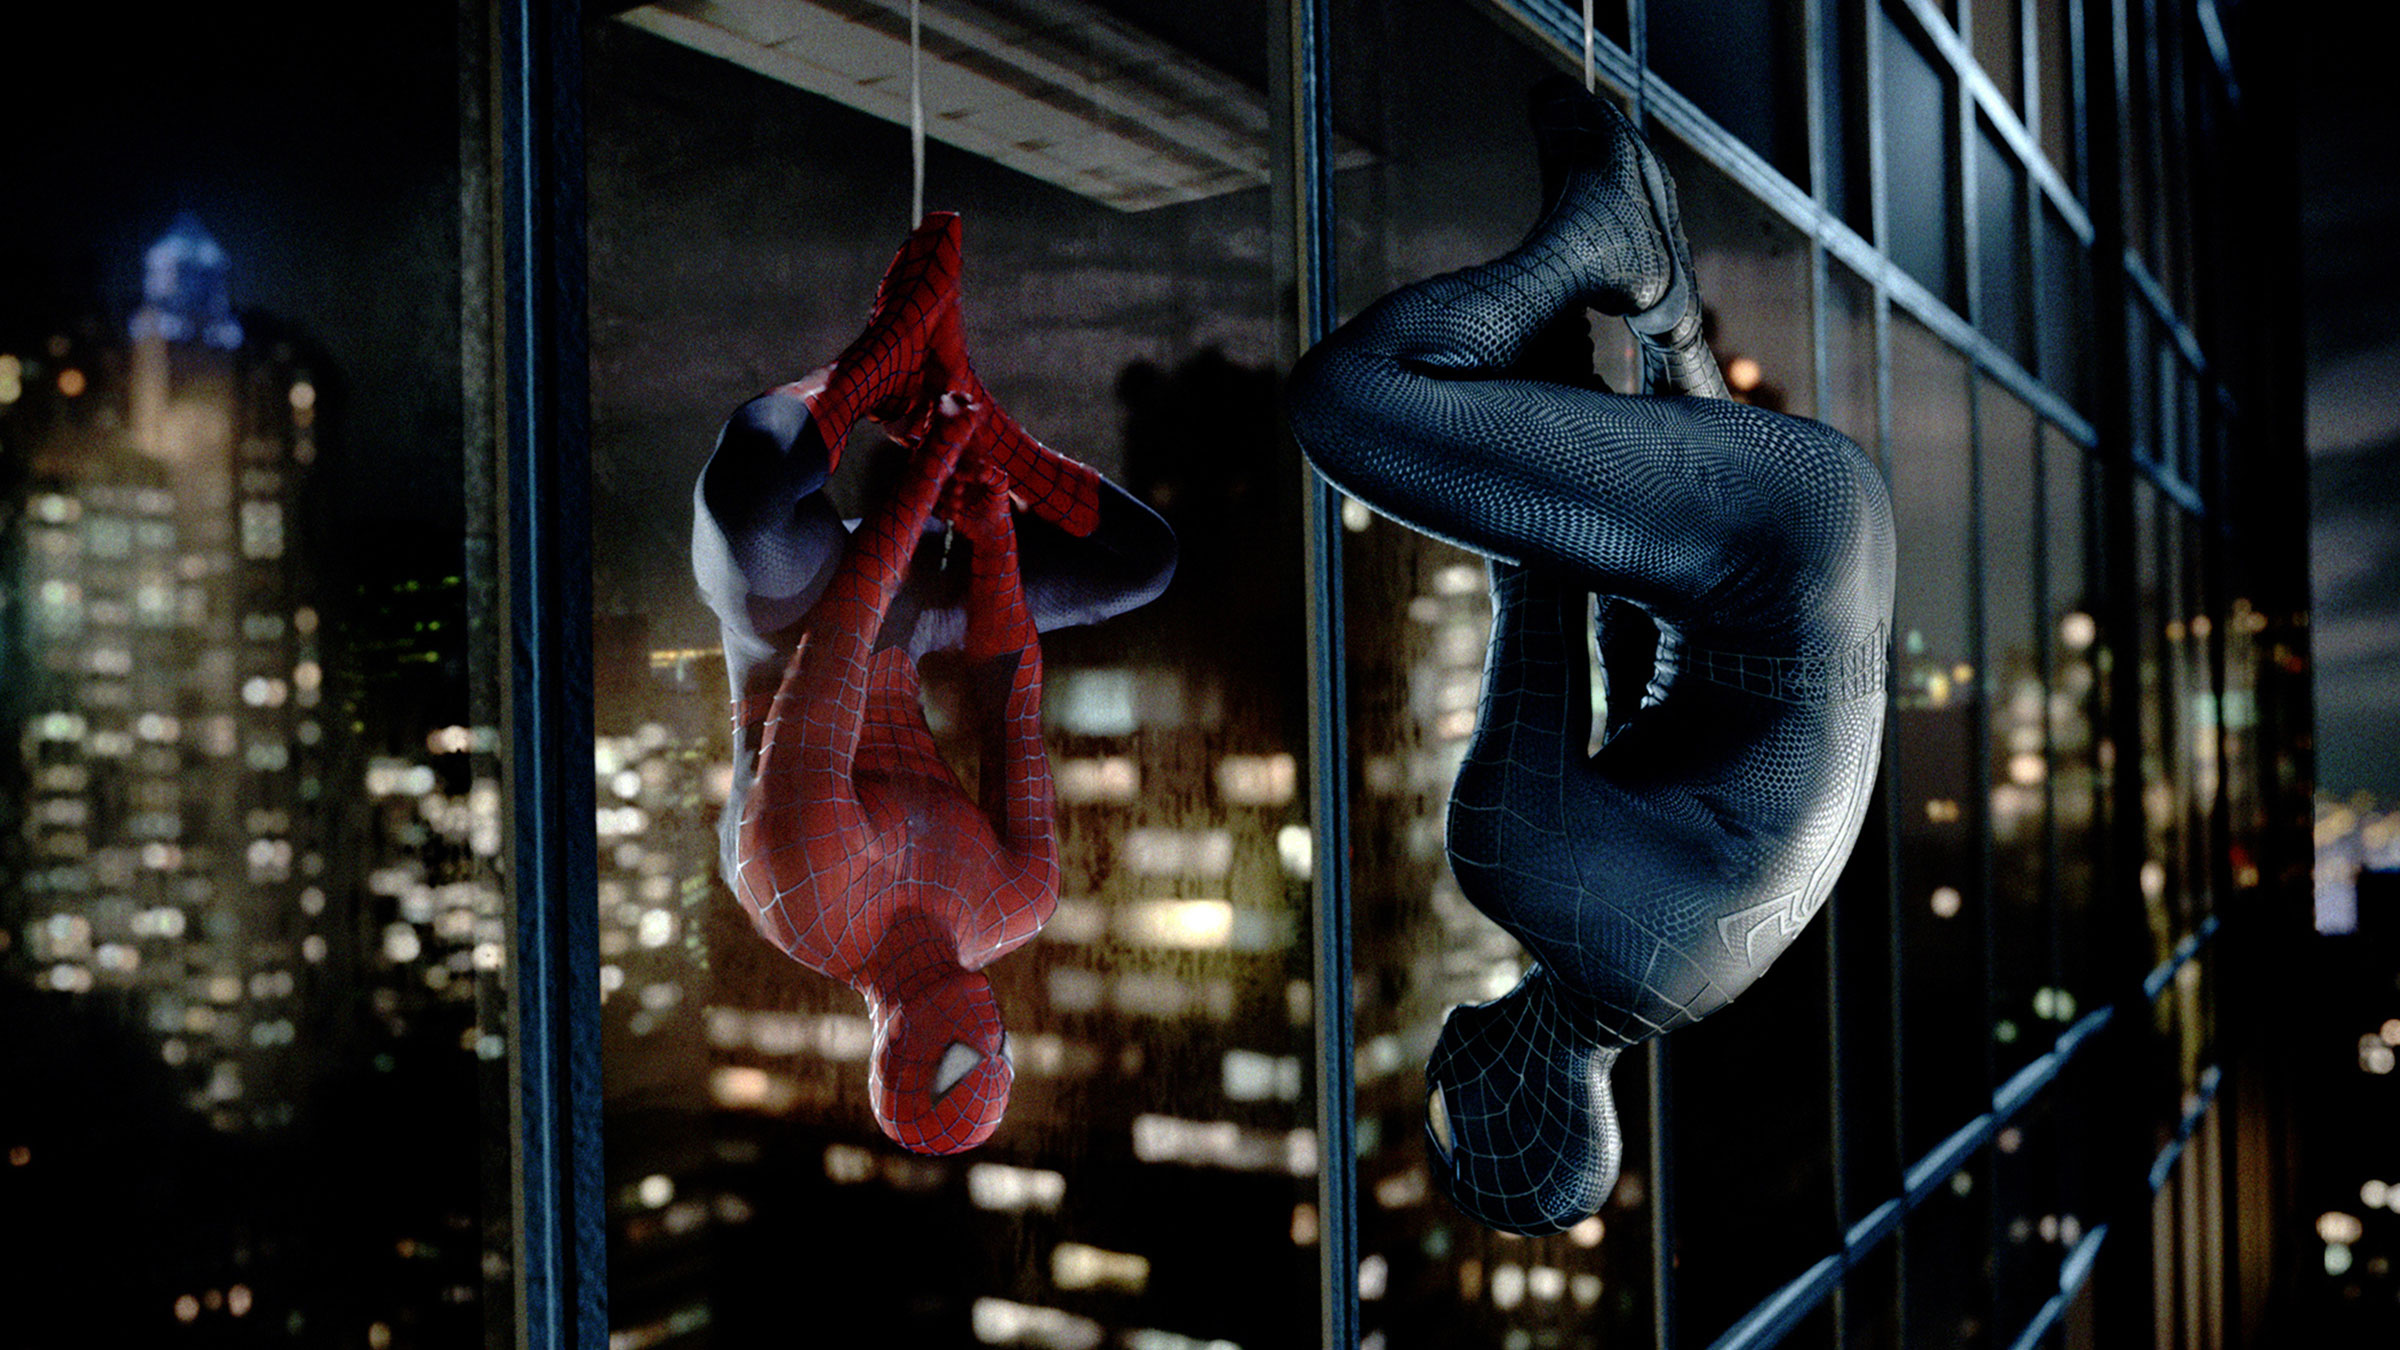 Spider-Man meets Venom in Spider-Man 3 (2007)